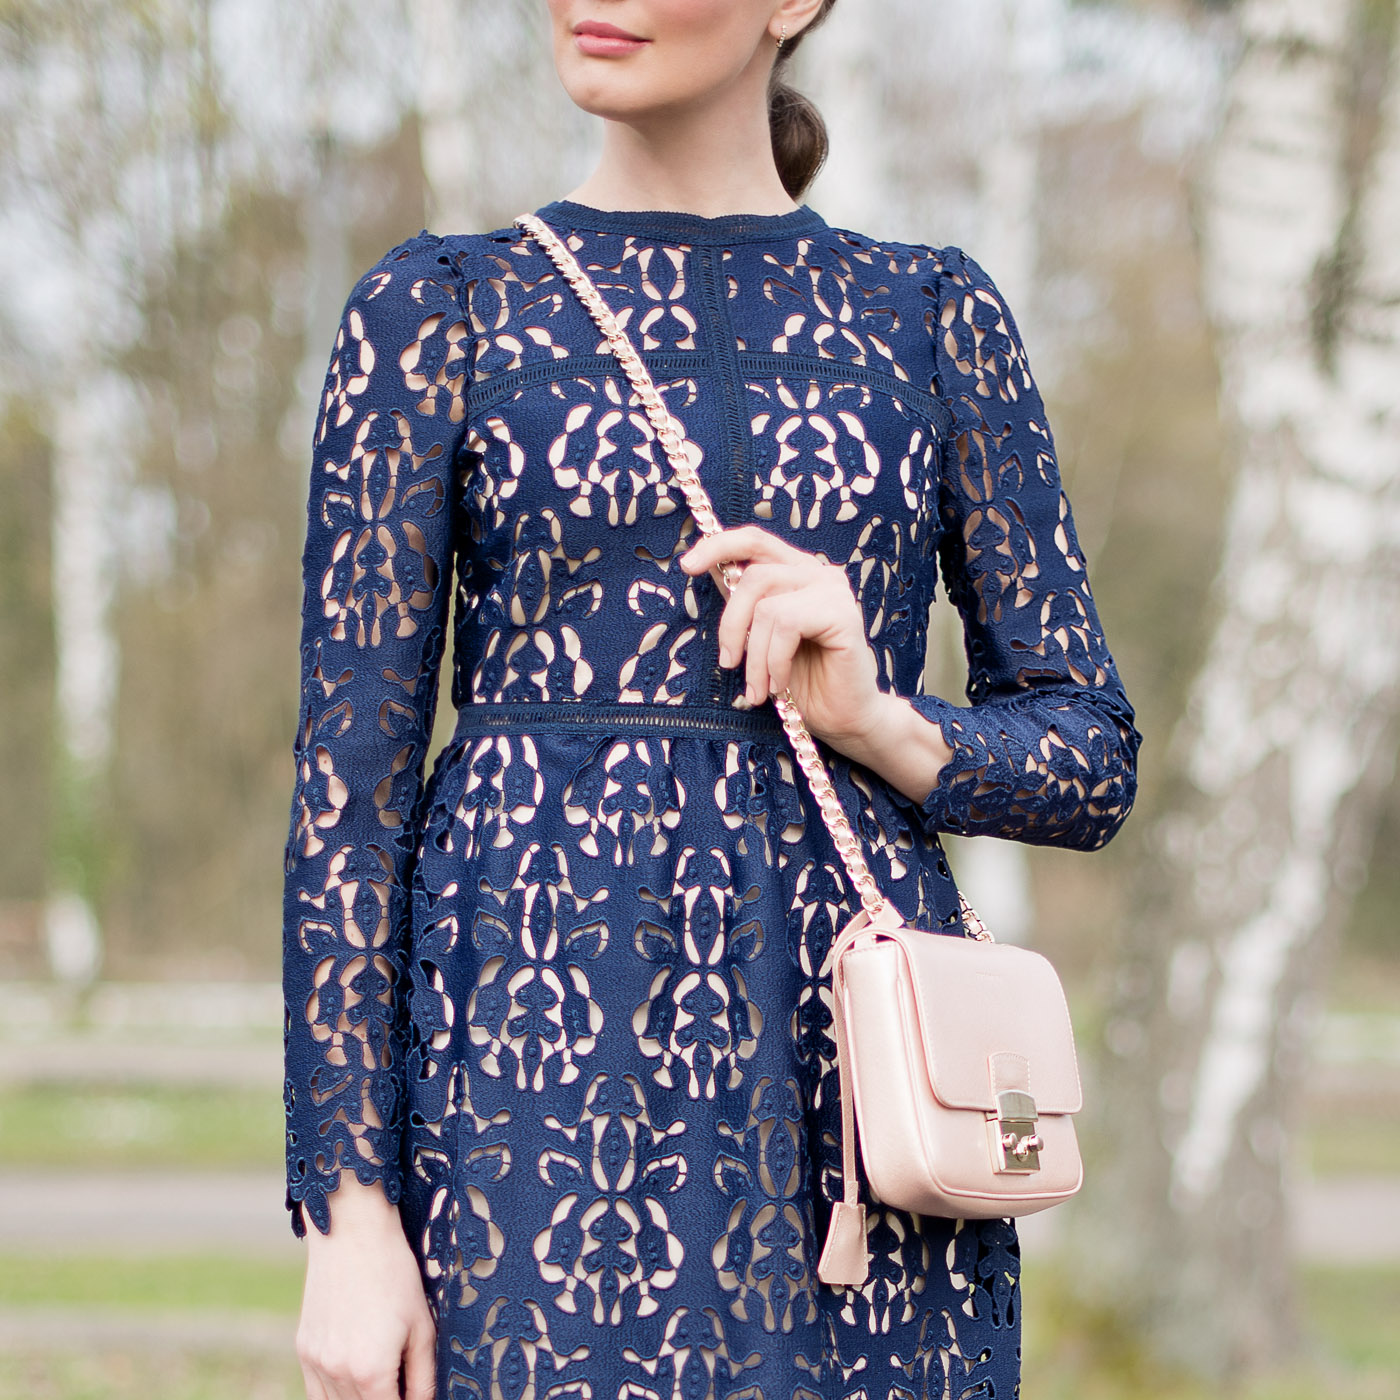 Zara-Lace-Dress-michaelkors-Coccinelle-fashionblog-3